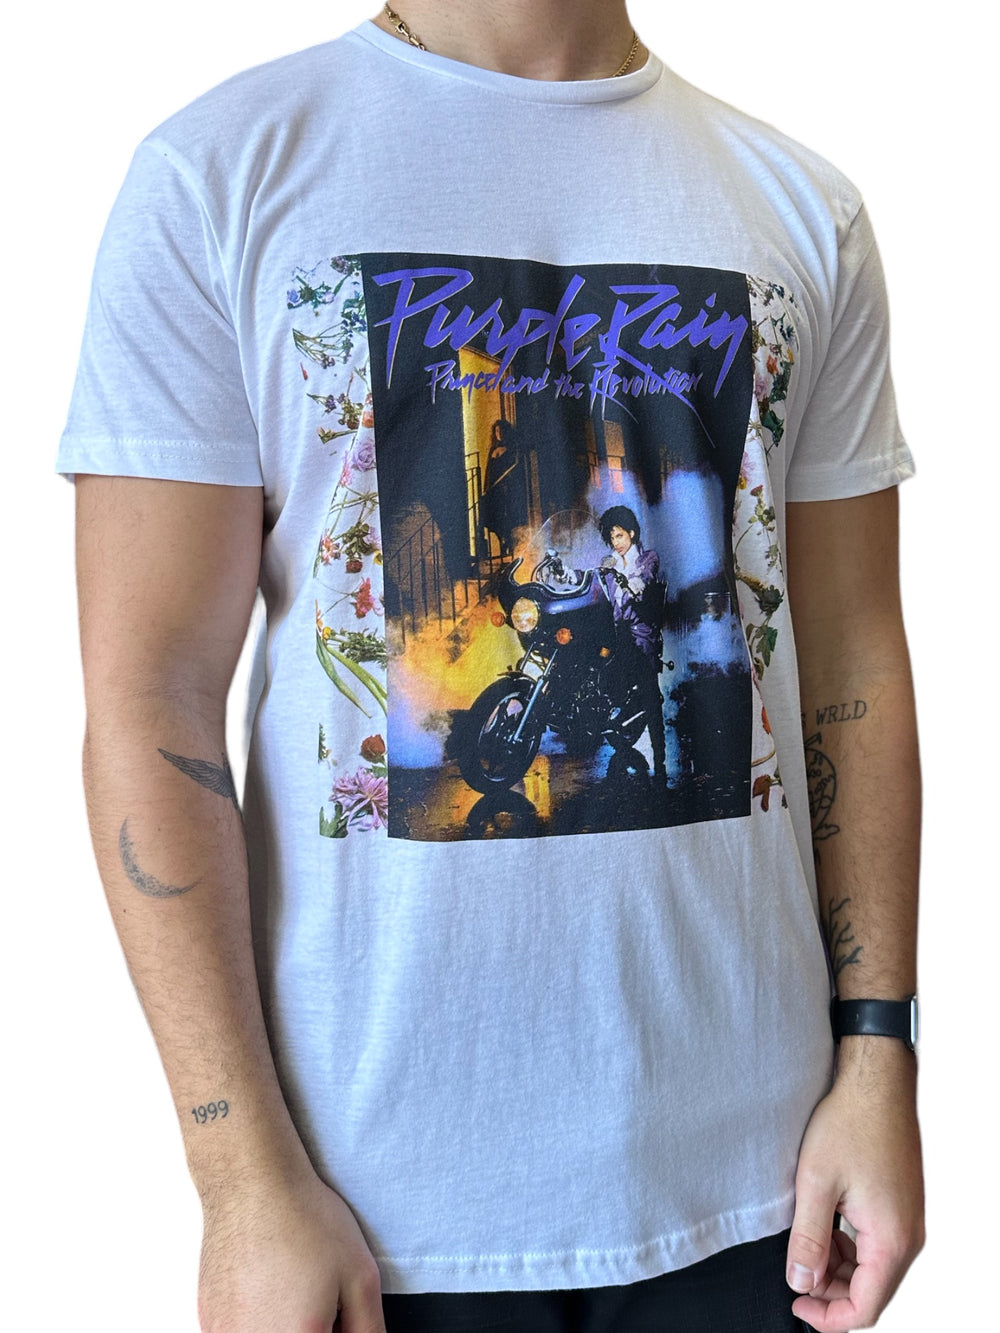 Prince – Purple Rain Album Front Cover Unisex Official T-Shirt NEW